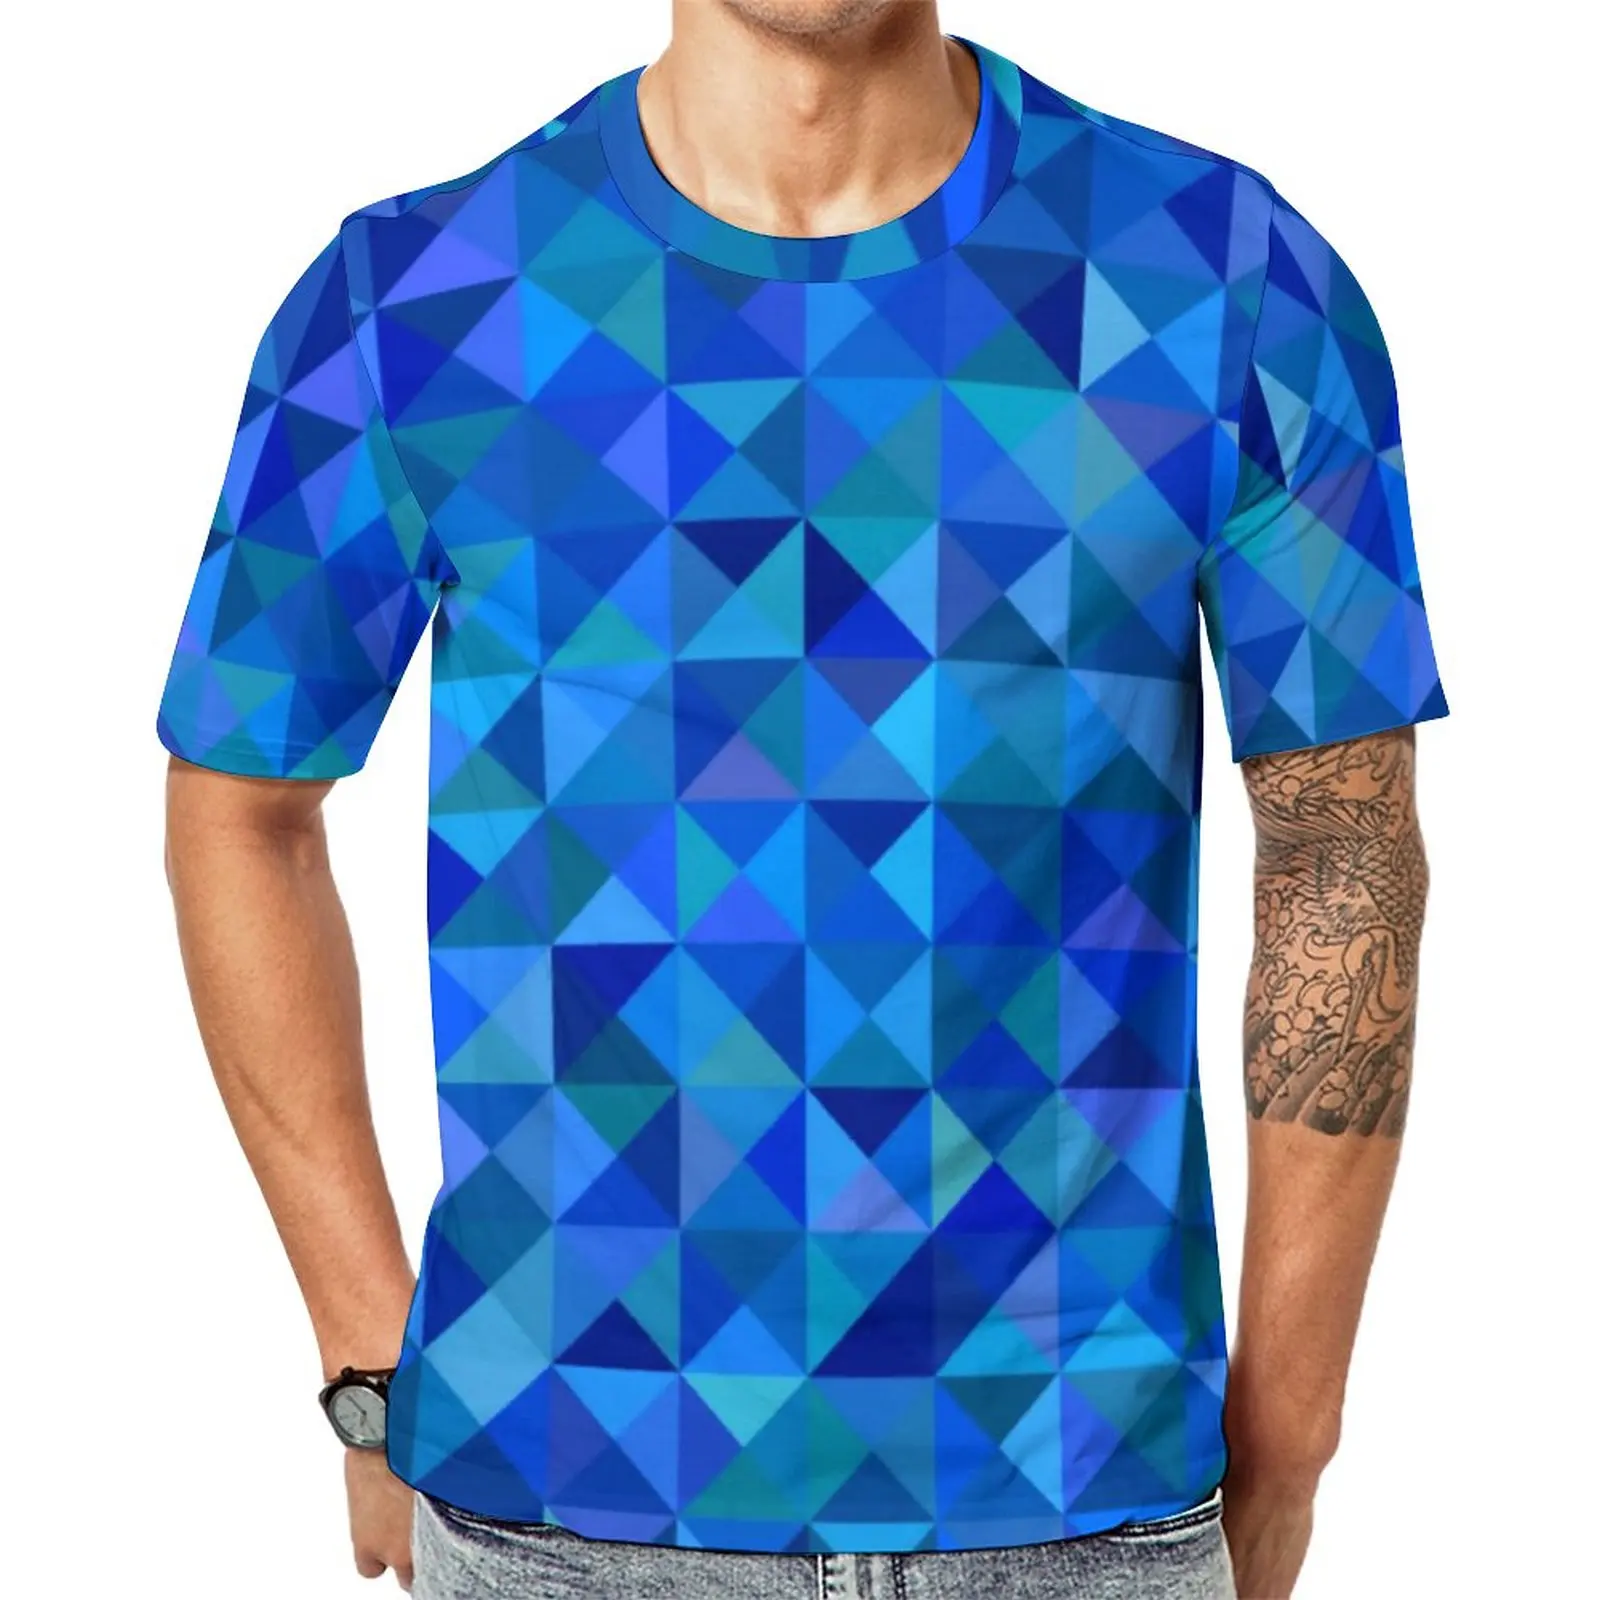 

Футболка мужская оверсайз с геометрическим принтом, рубашка с абстрактным треугольным принтом, топ с коротким рукавом в стиле Харадзюку, на лето